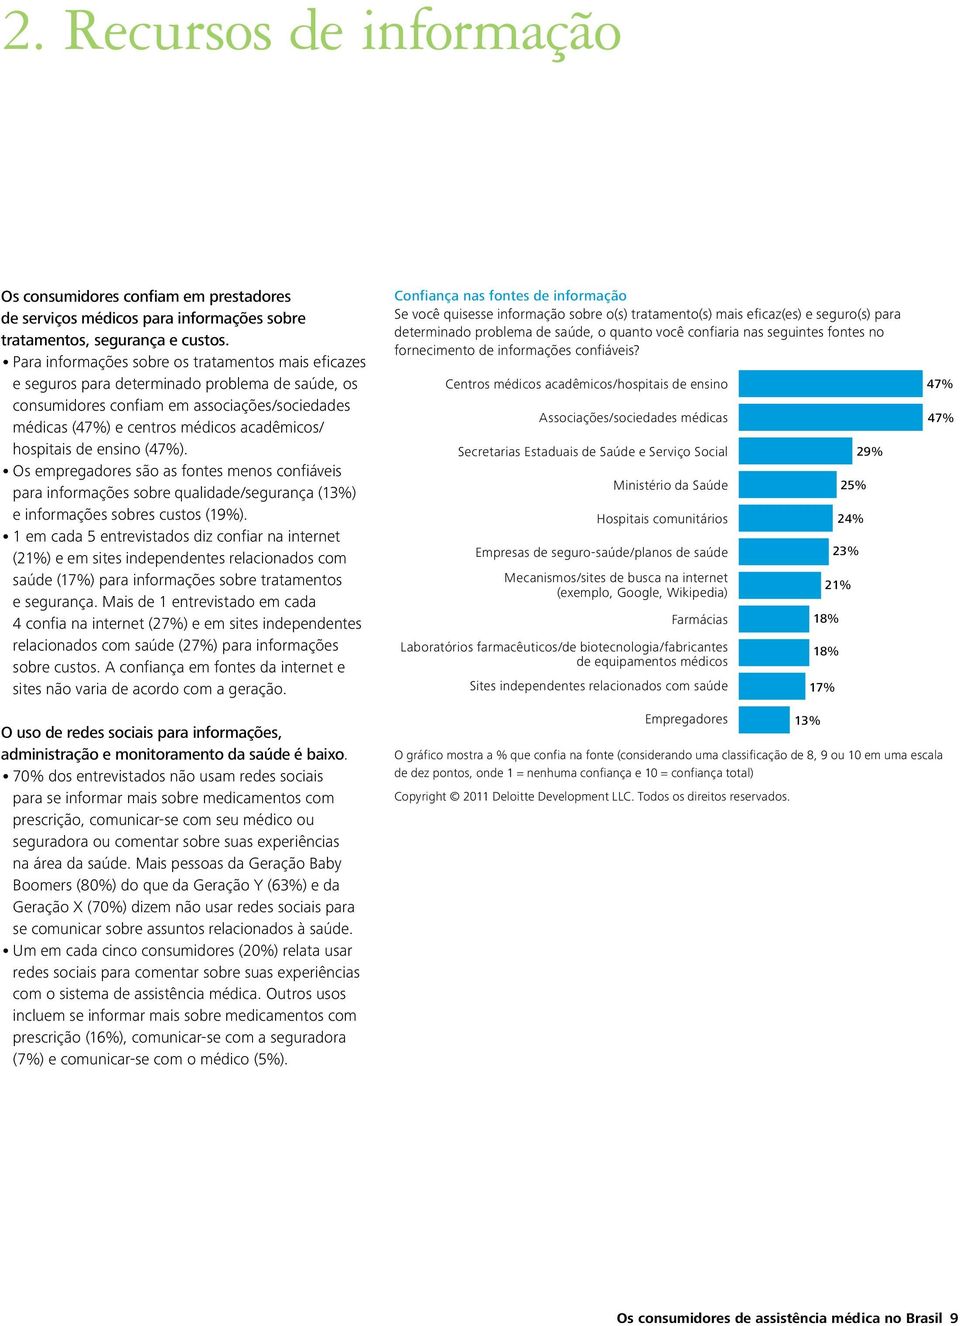 hospitais de ensino (47%). Os empregadores são as fontes menos confiáveis para informações sobre qualidade/segurança (13%). e informações sobres custos (19%).